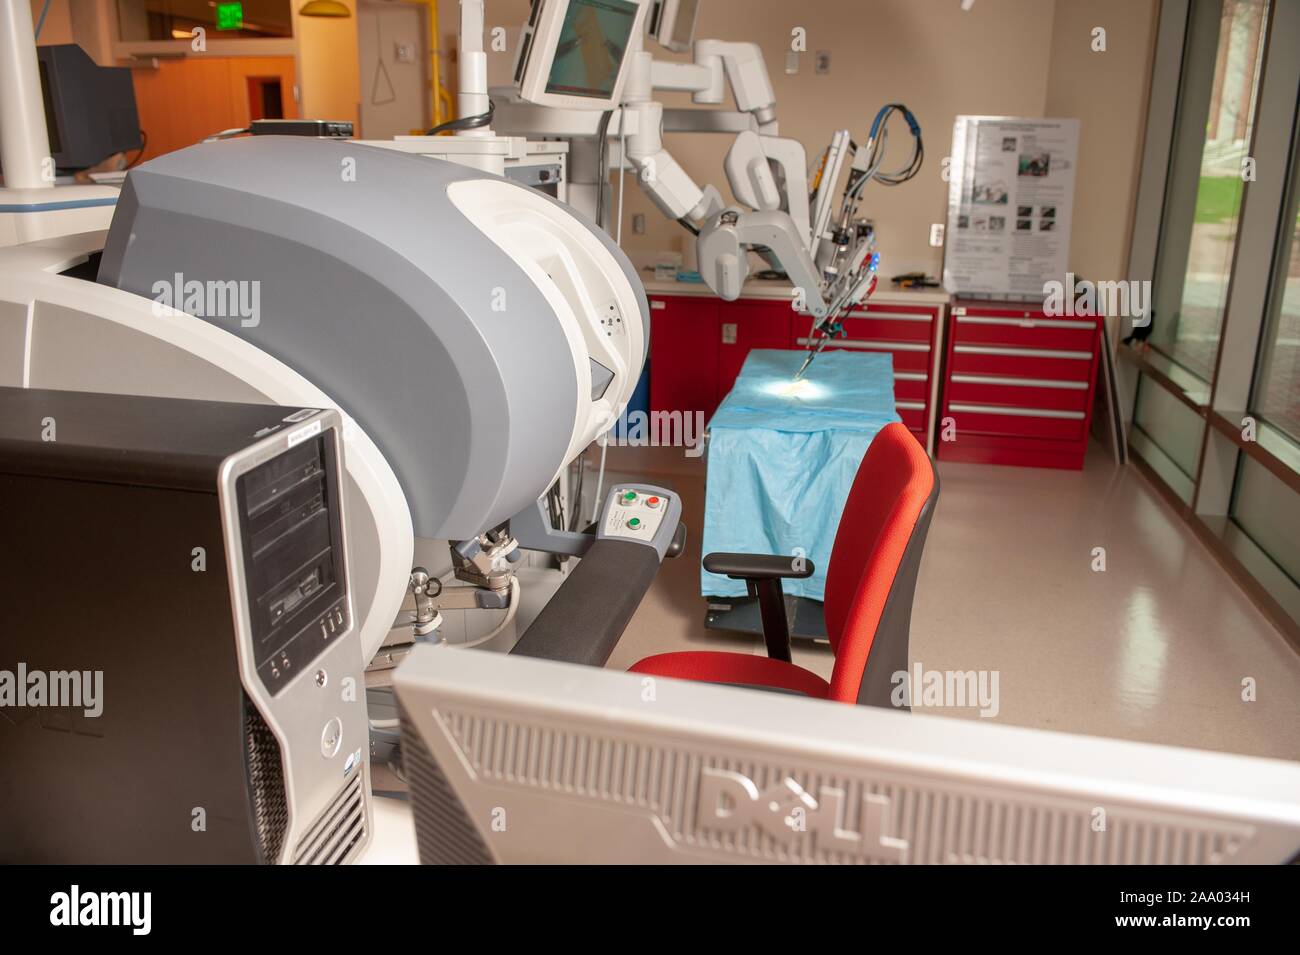 Un Whiting School of Engineering fausse salle d'opération, avec un robot chirurgical da Vinci, à la Johns Hopkins University, Baltimore, Maryland, le 6 avril 2009. À partir de la collection photographique de Homewood. () Banque D'Images